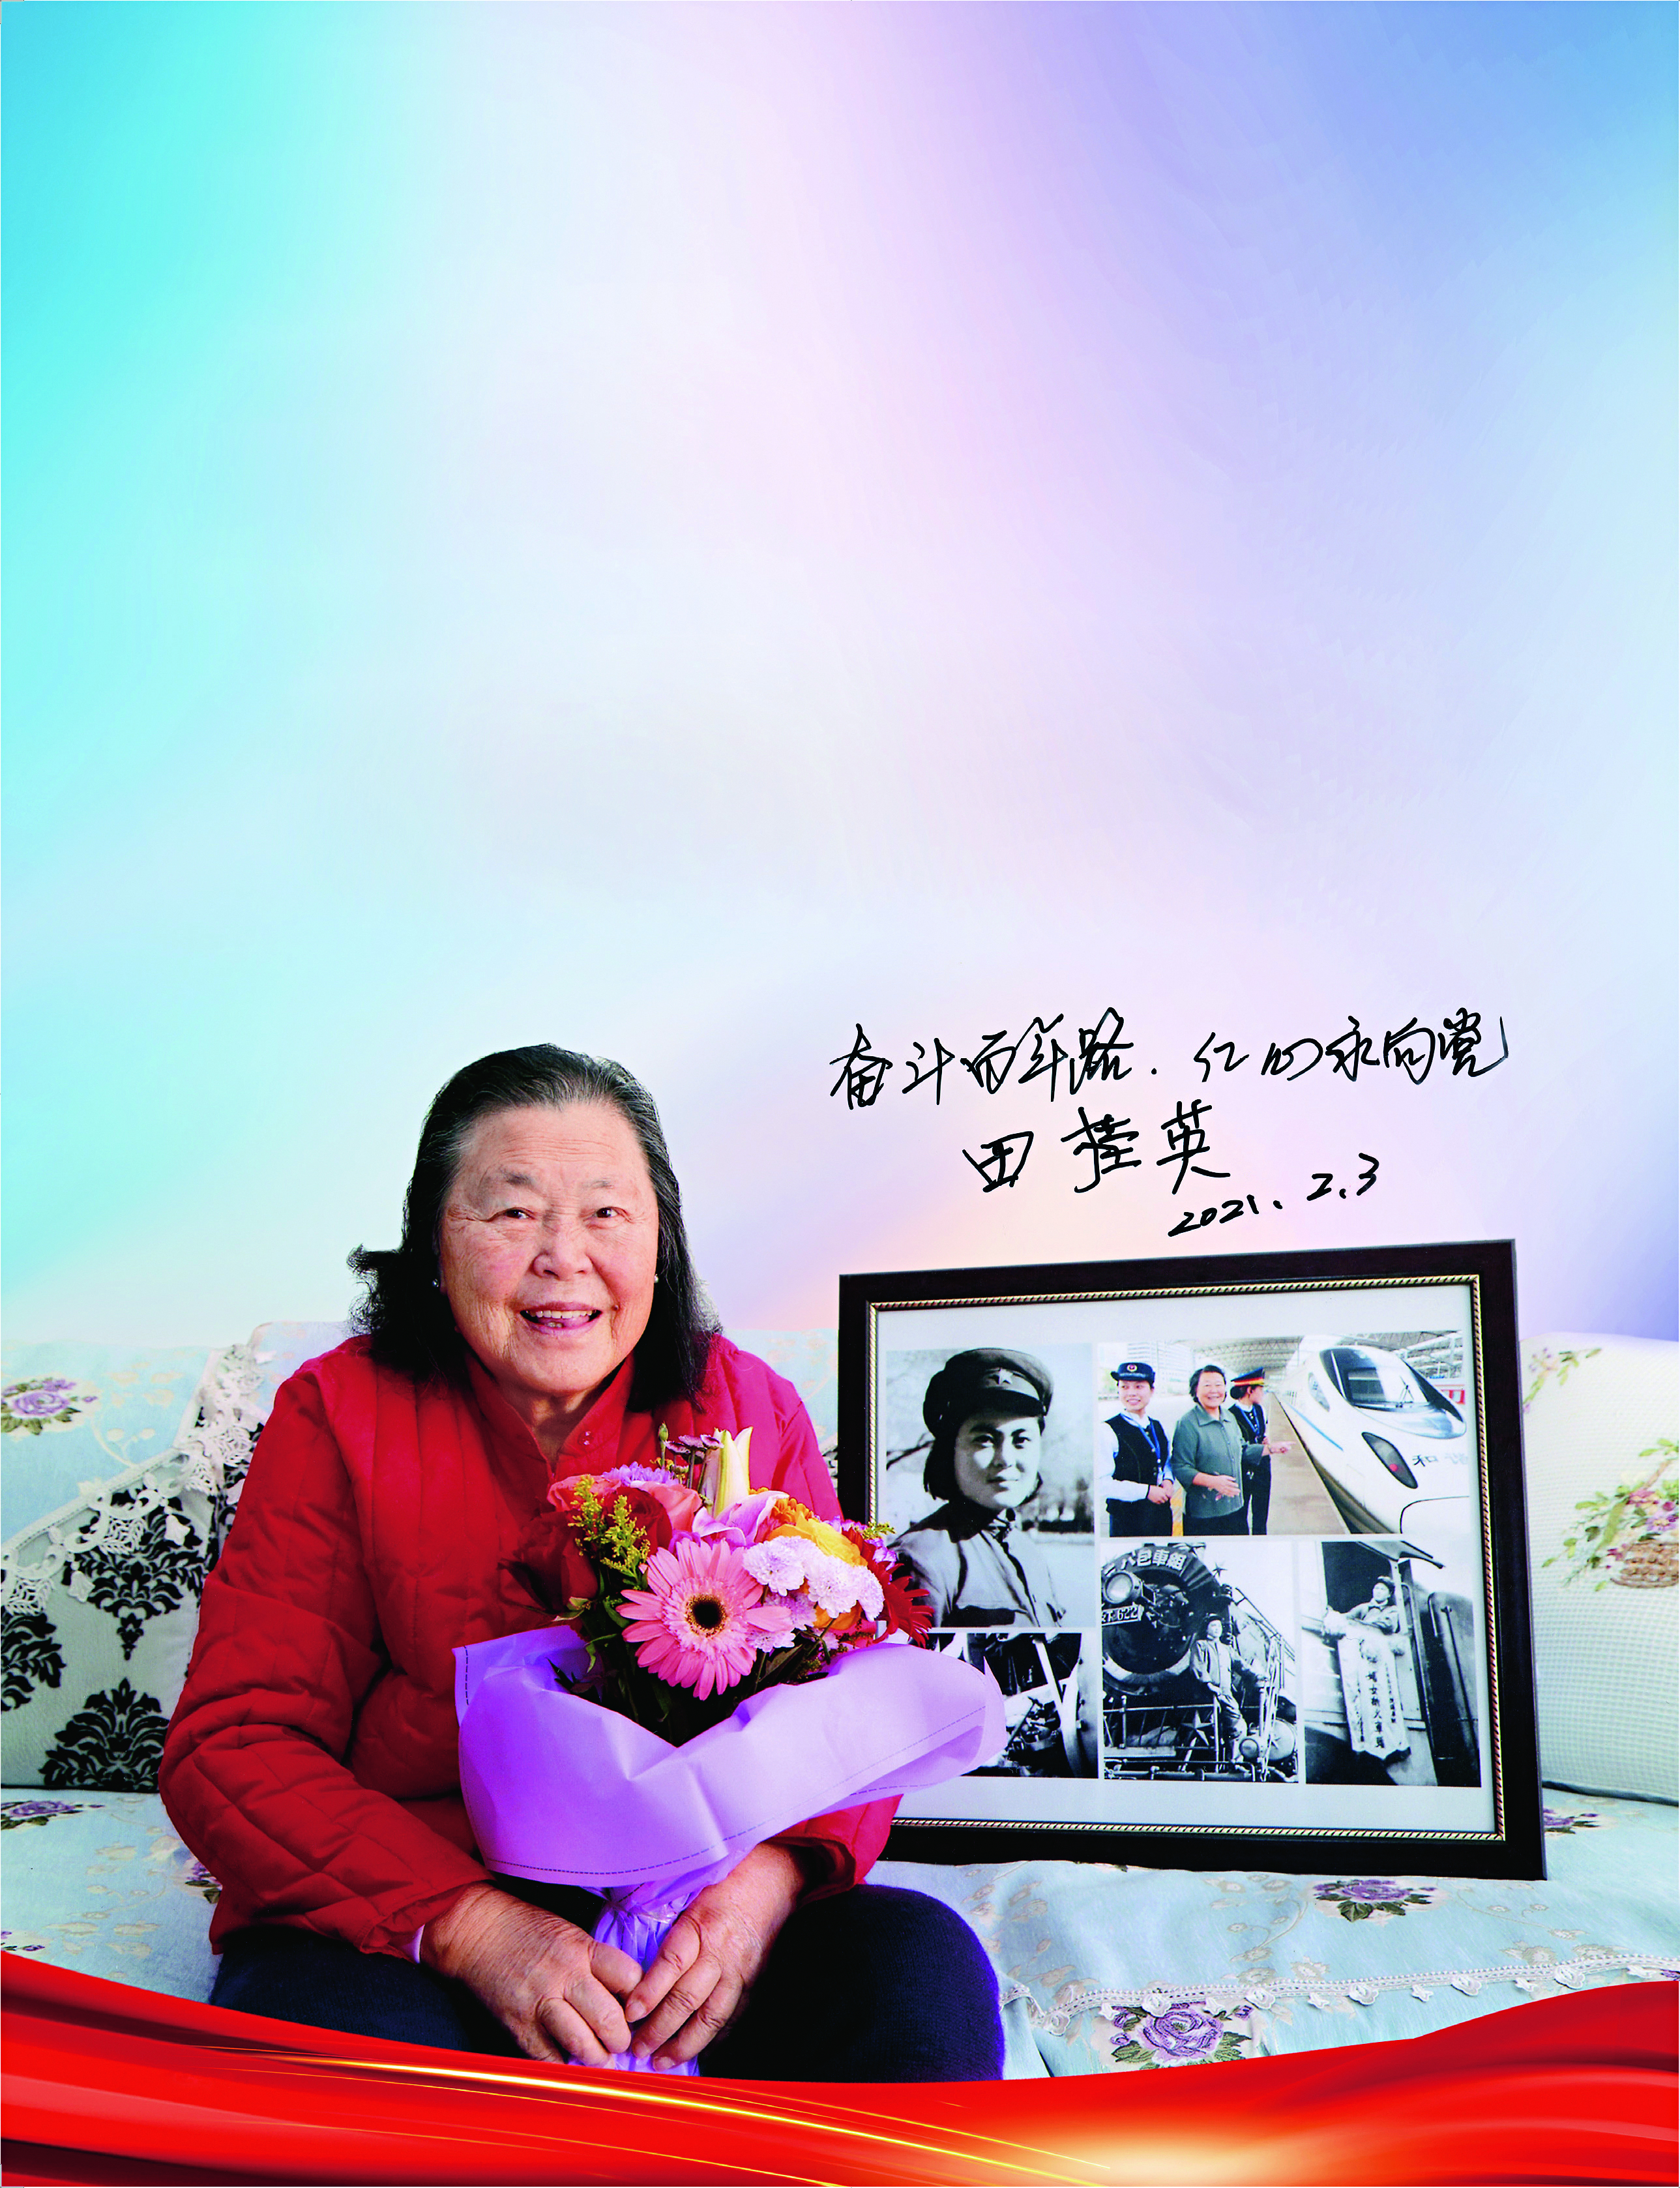 Tian Guiying: China's First Woman Train Driver